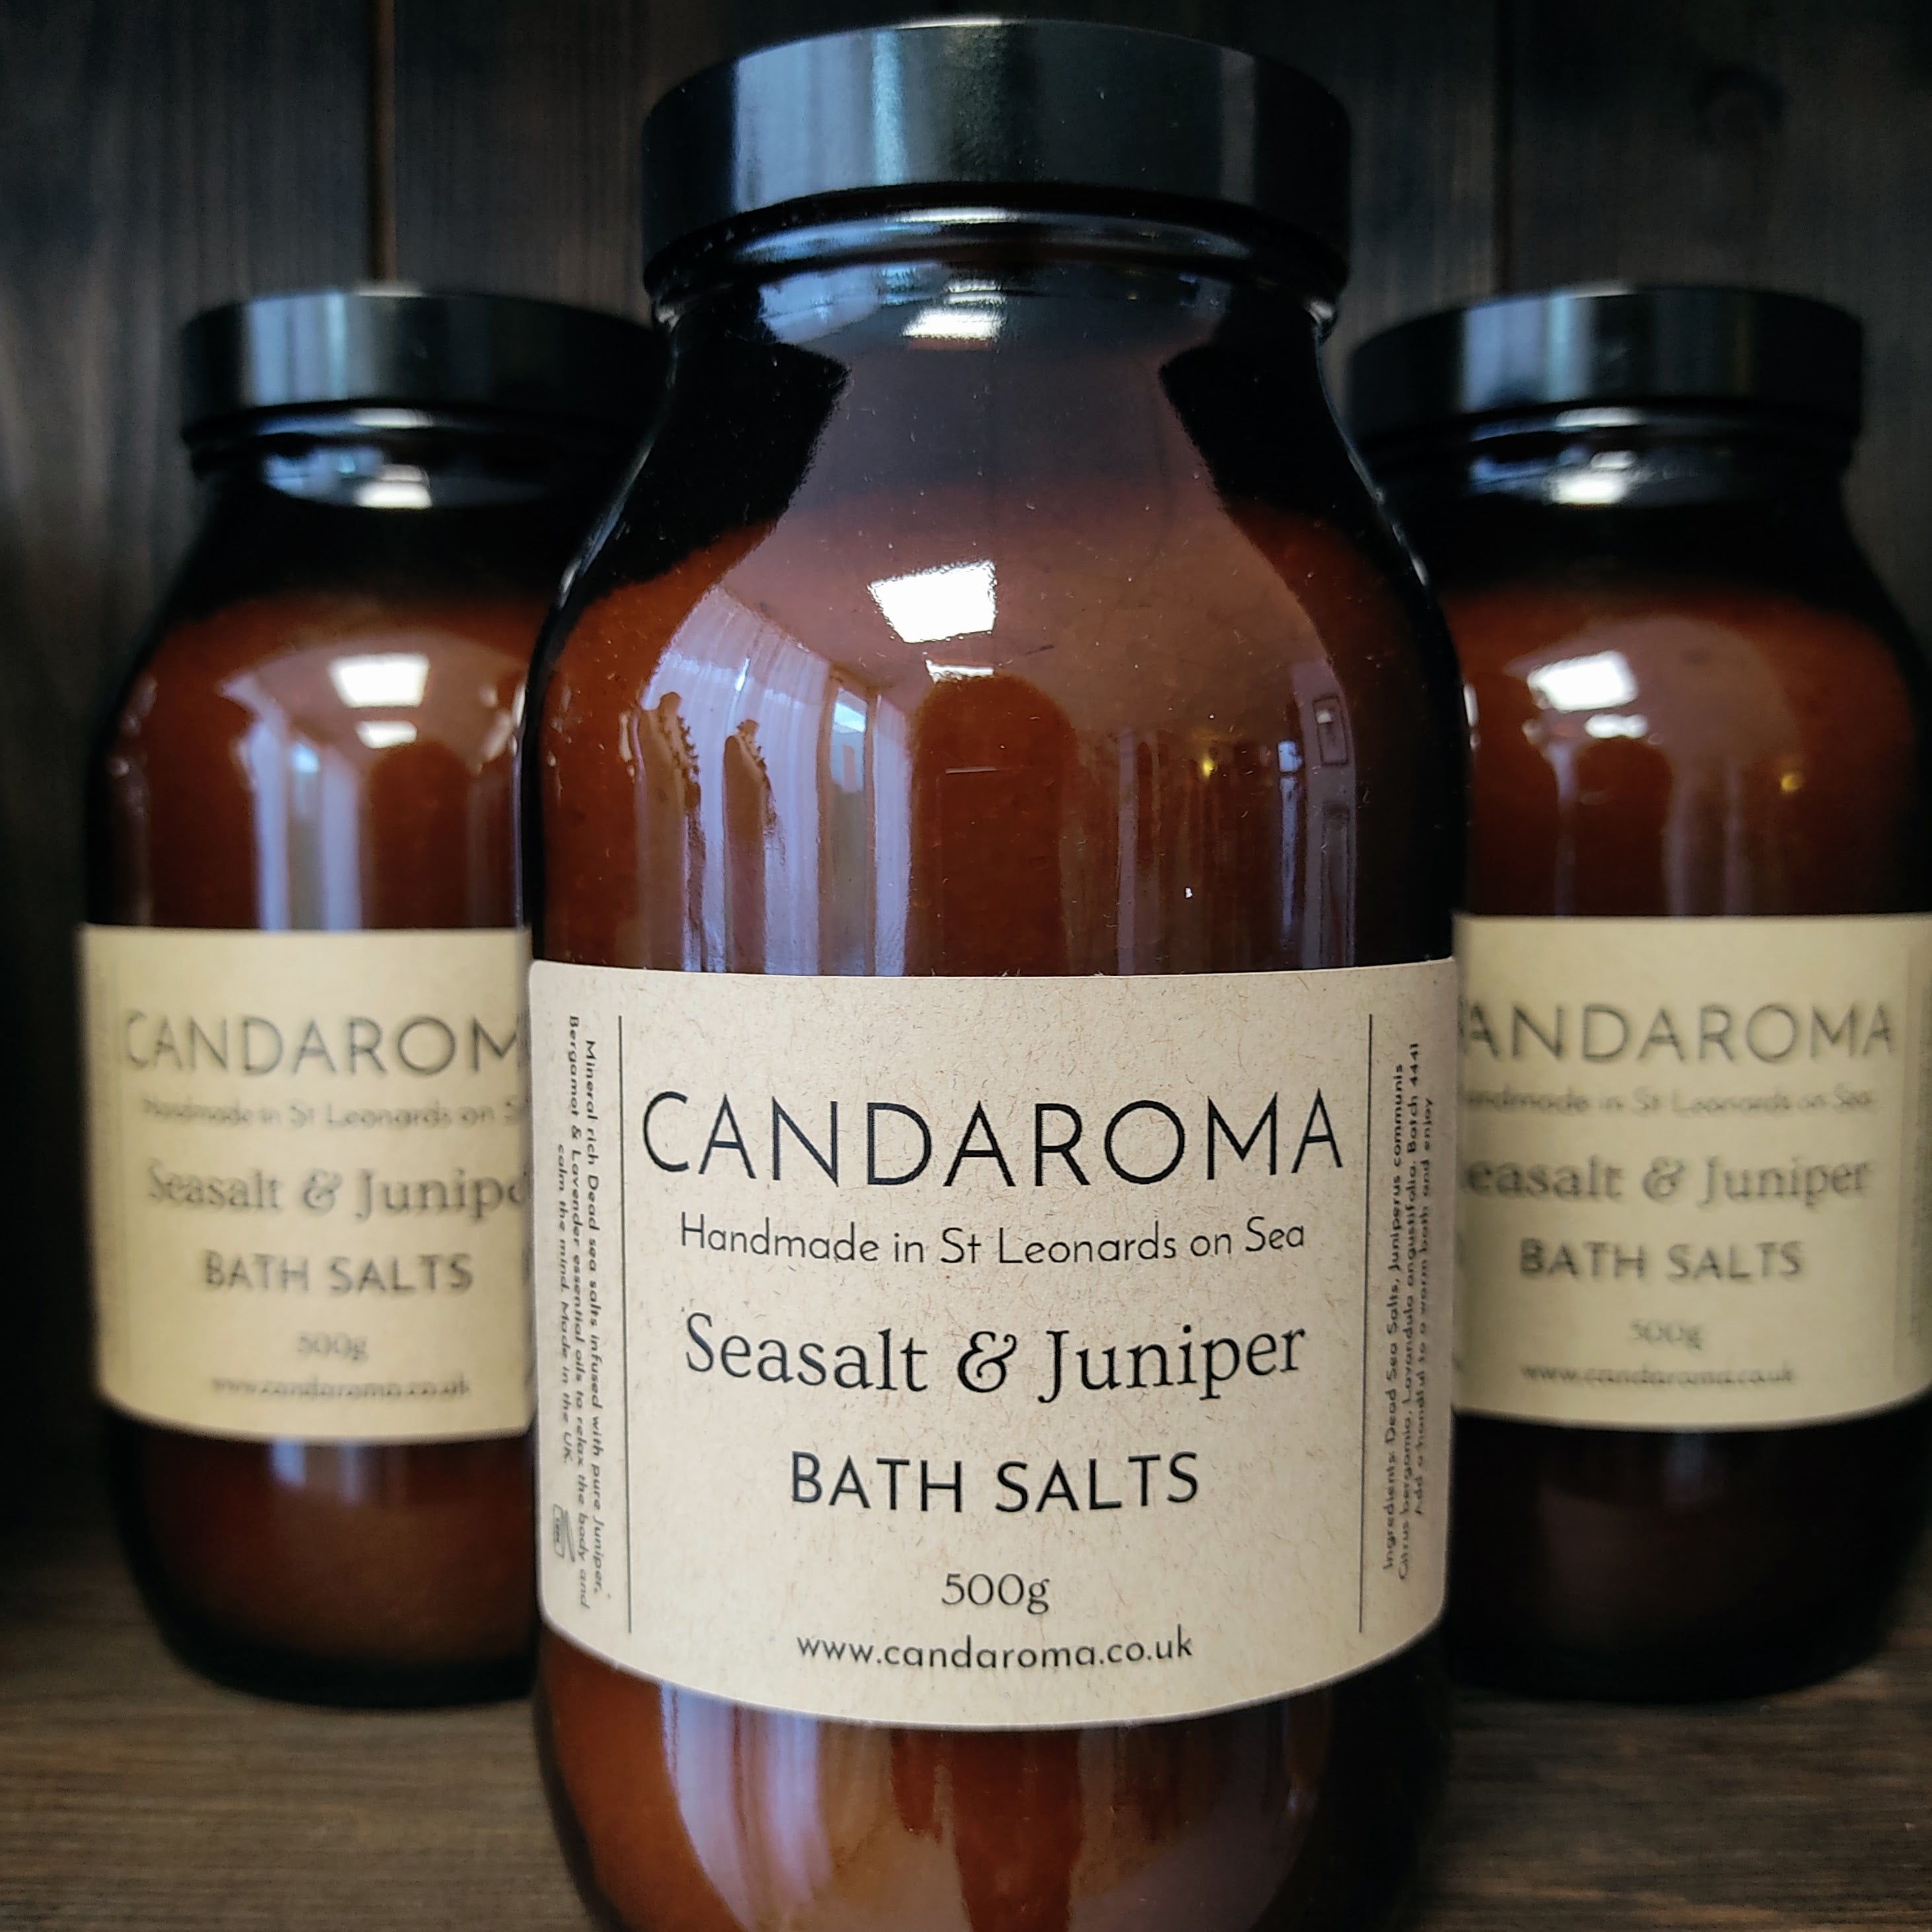 Bath salts - Seasalt & Juniper